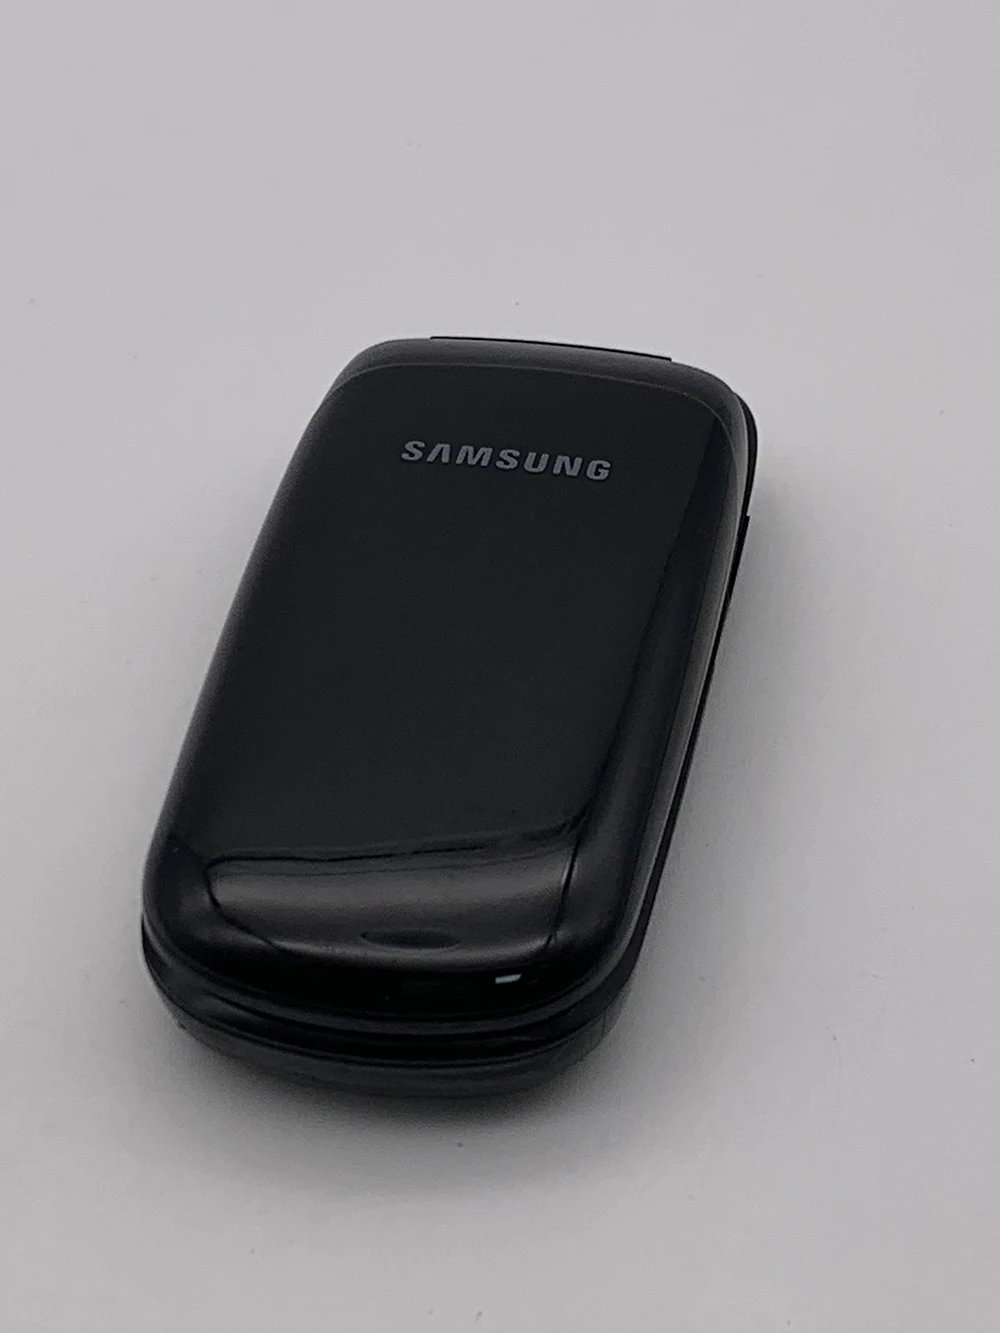 Оригинальный Мобильный Телефон Samsung E1150 с 1,43-дюймовым Экраном и Аккумулятором 800 мАч GSM 900 / 1800 Разблокированный Мобильный Телефон 2